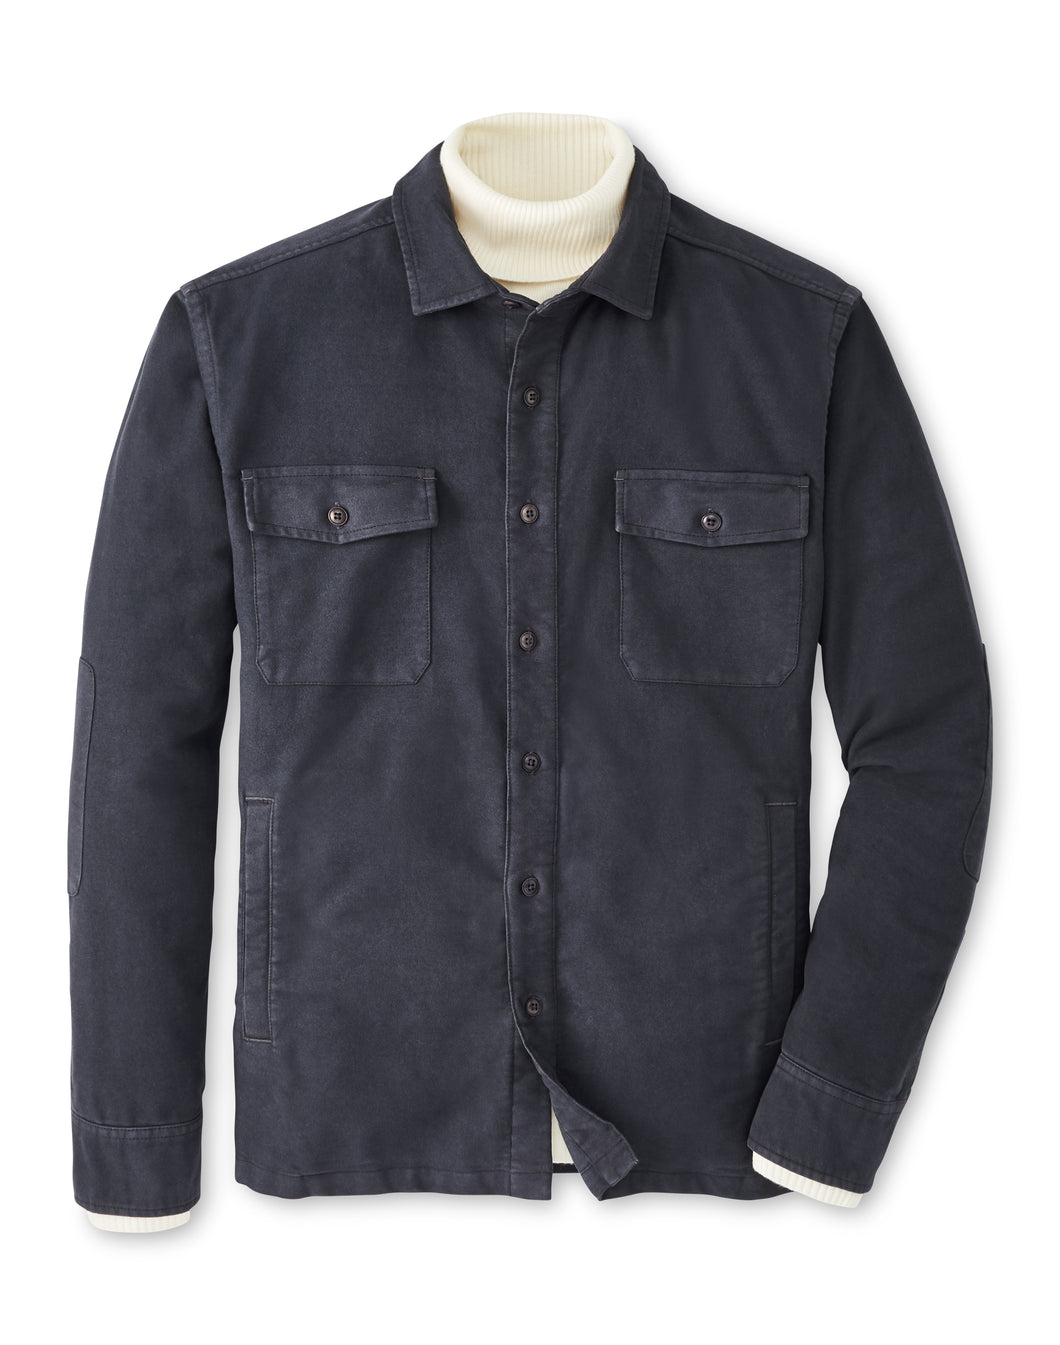 Peter Millar Apres-Ski Garment Dyed Moleskin Shirt Jacket in Washed Black